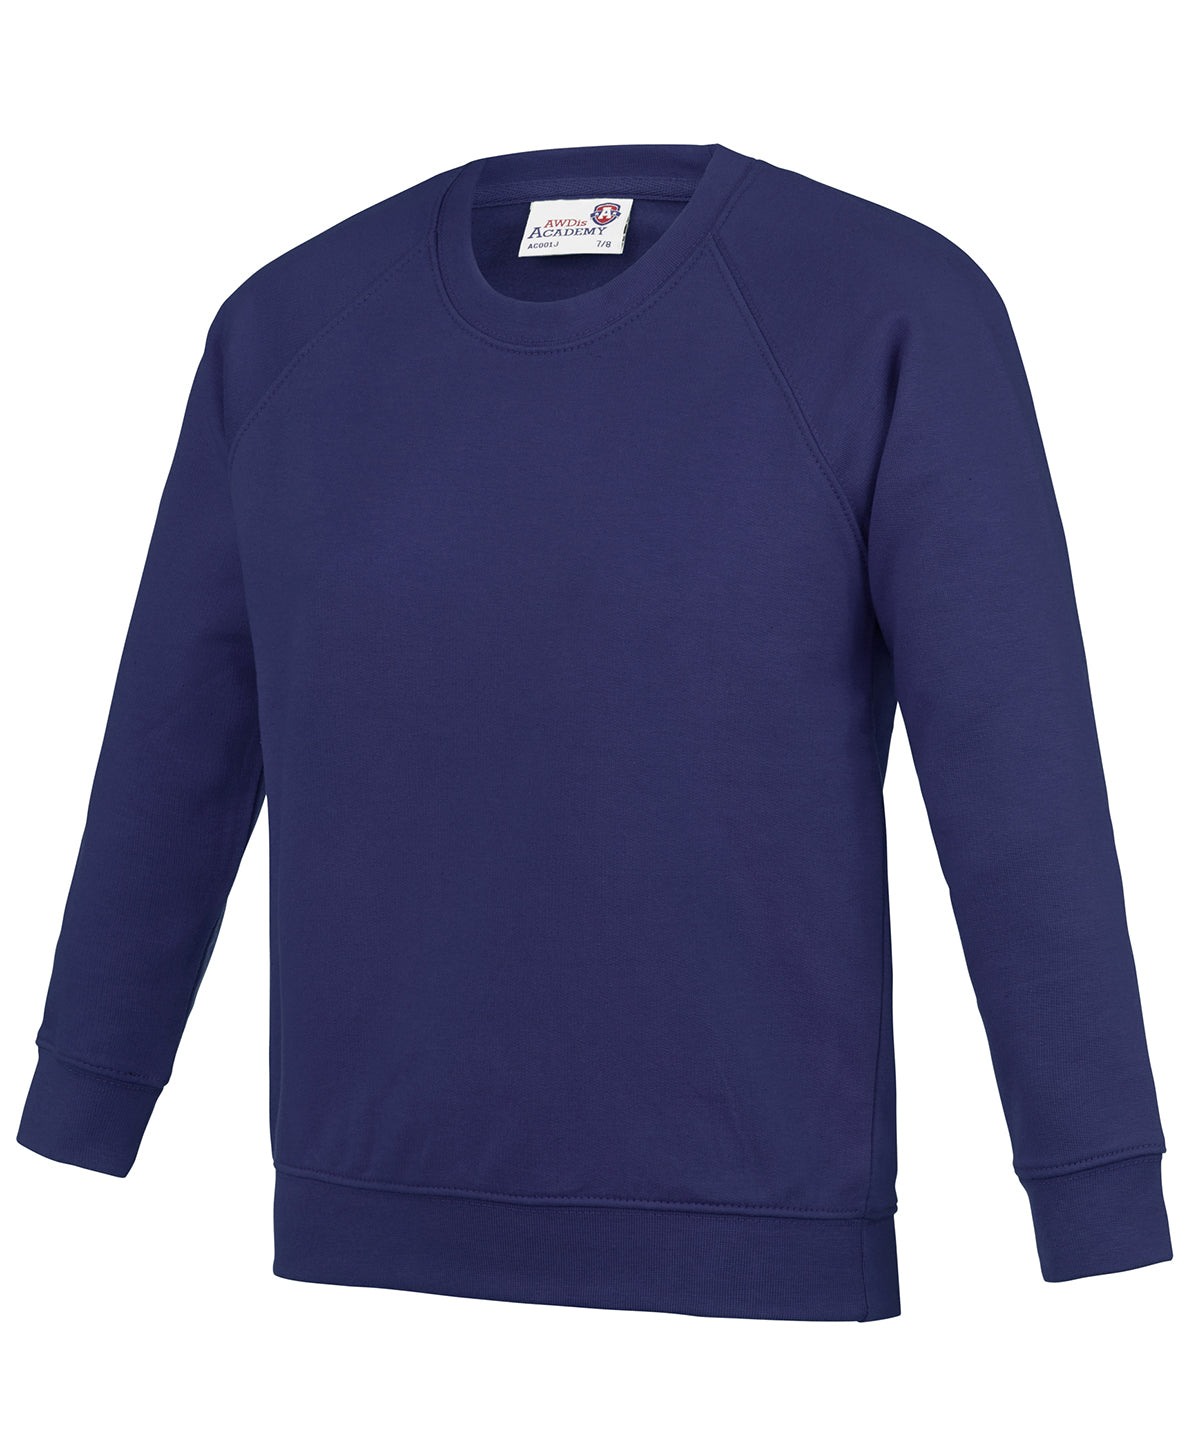 Personalised Sweatshirts - Burgundy AWDis Academy Kids Academy raglan sweatshirt